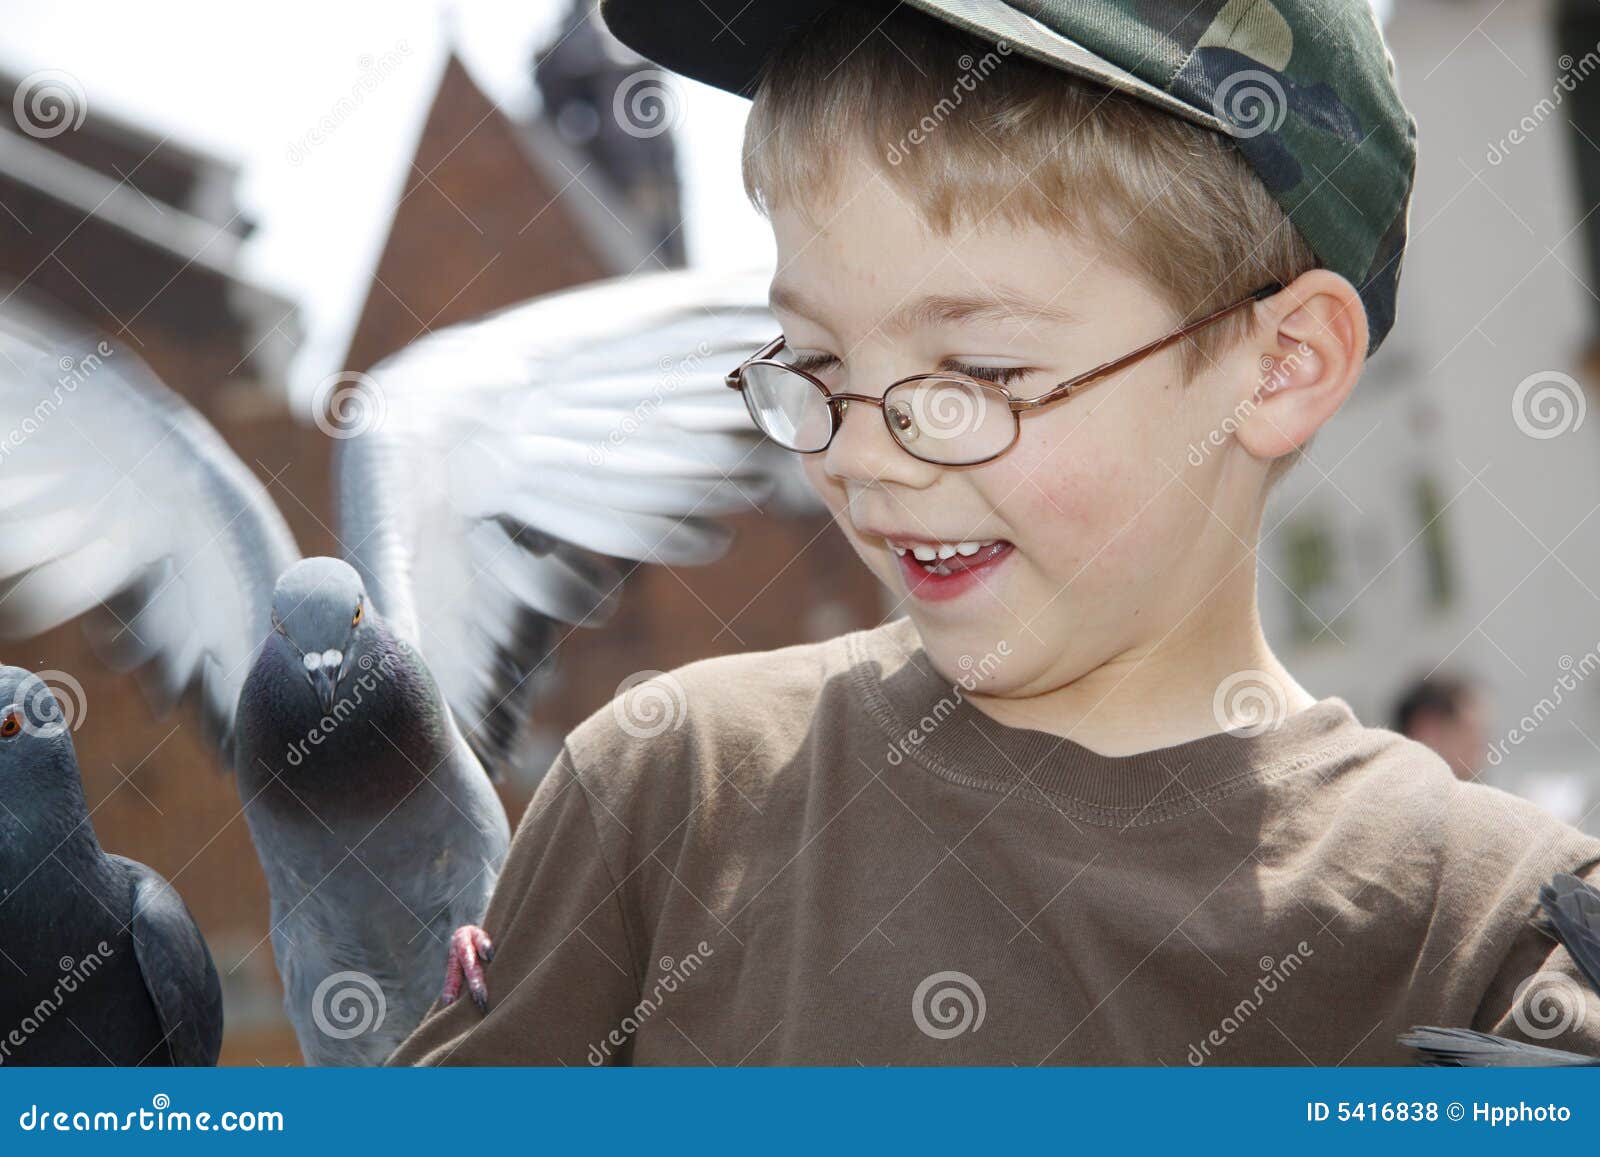 Мальчик и птица сколько. Мальчик и птичка. Фото мальчика и птицы. Мальчик с птичкой на голове. Моменты из мальчик птица.